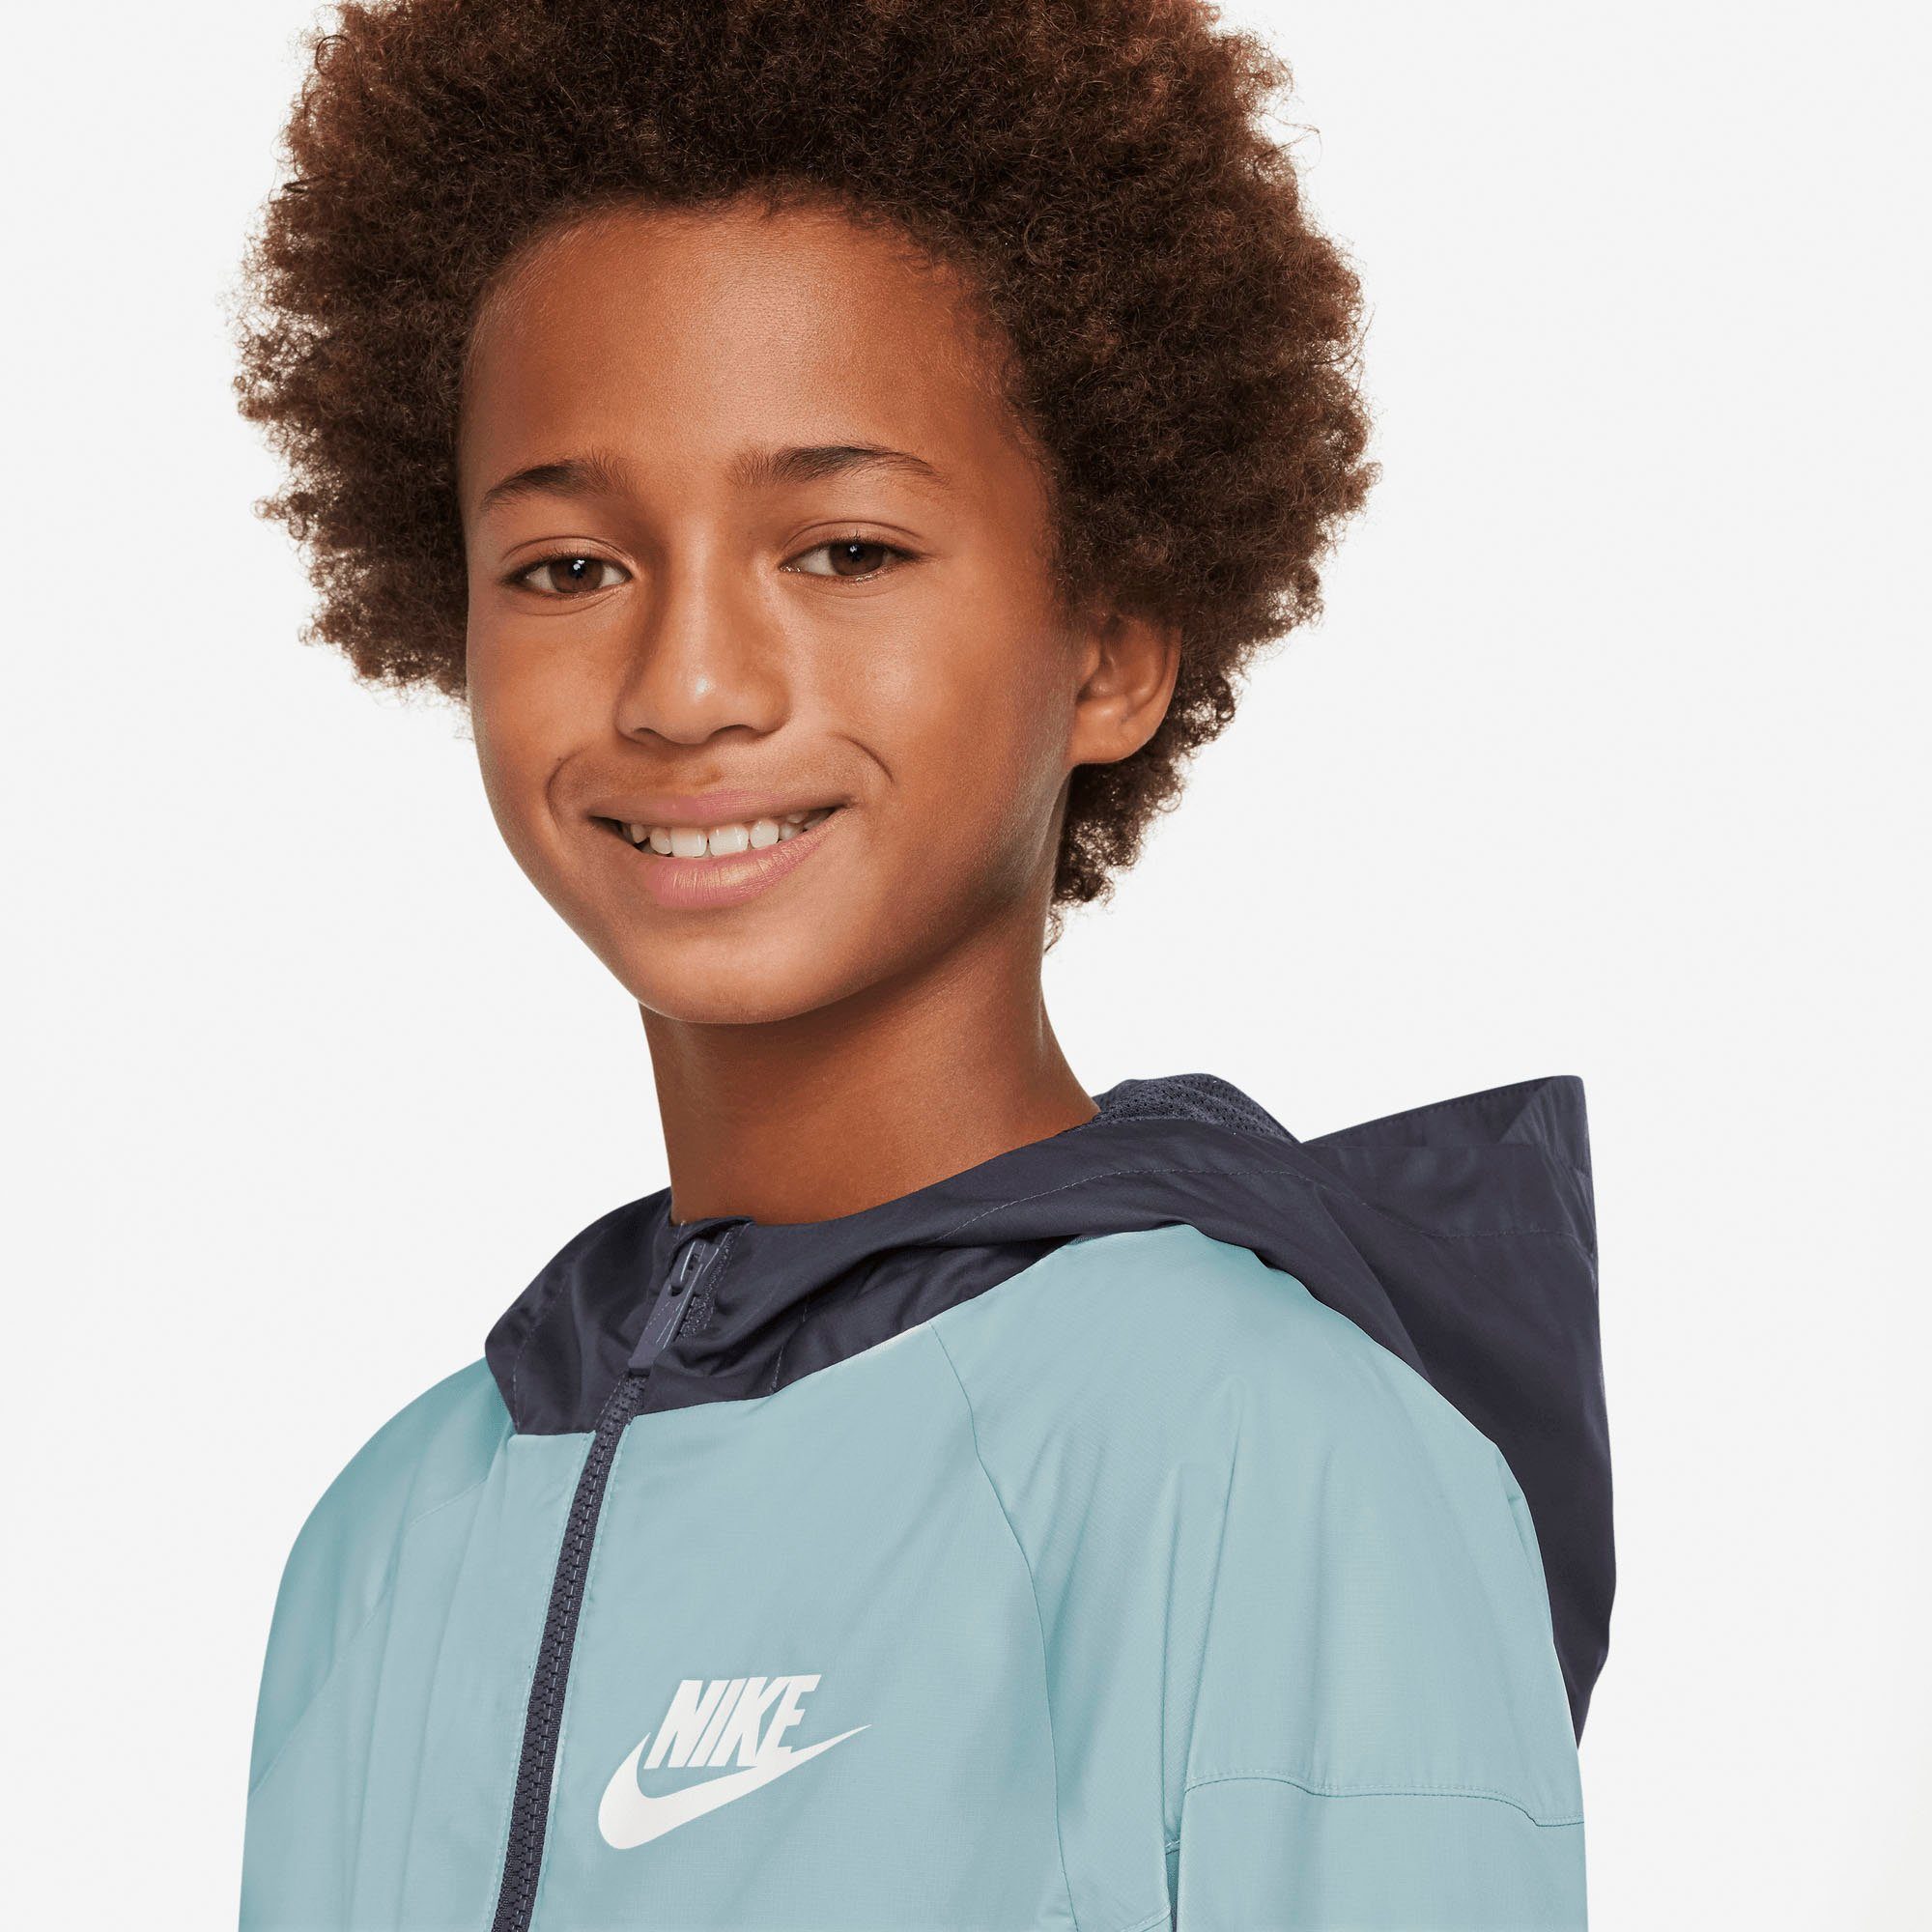 Big Sweatjacke Jacket (Boys) grau Windrunner Sportswear Nike Kids'